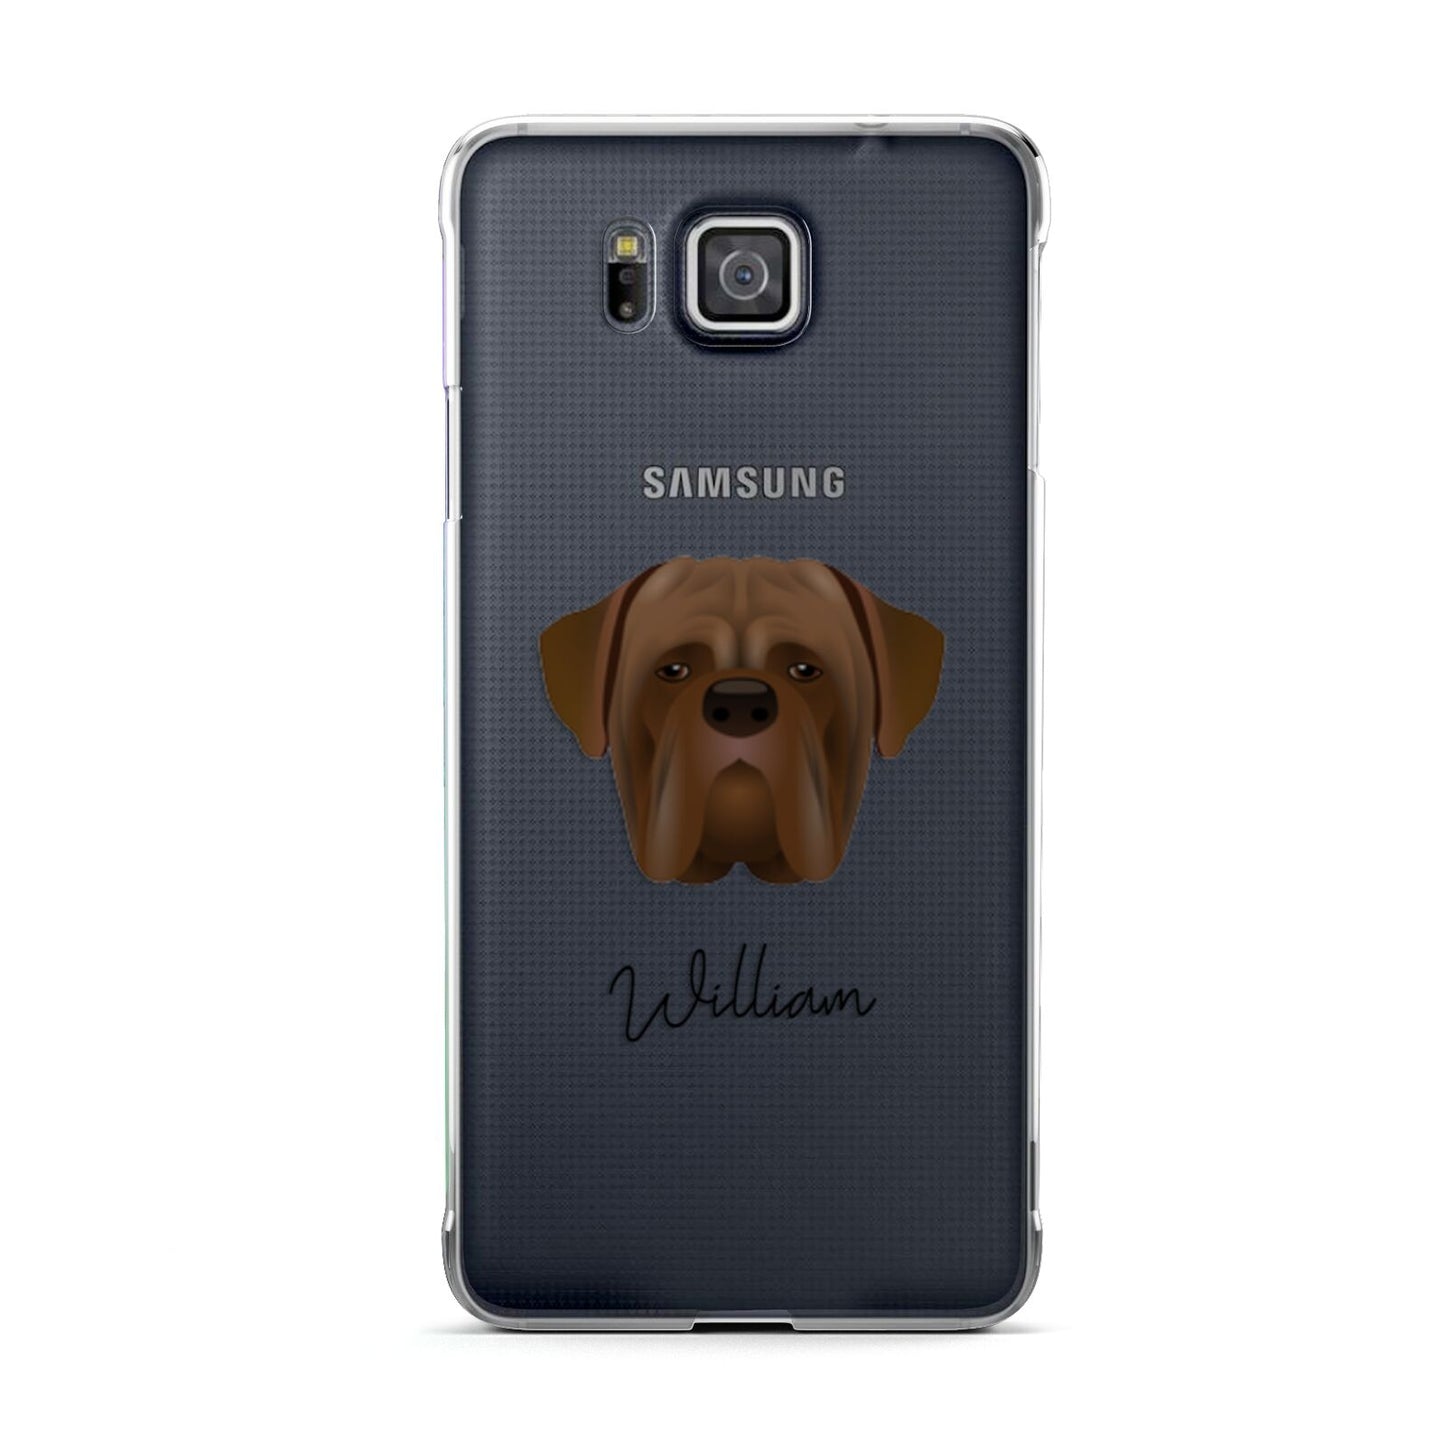 Dogue de Bordeaux Personalised Samsung Galaxy Alpha Case